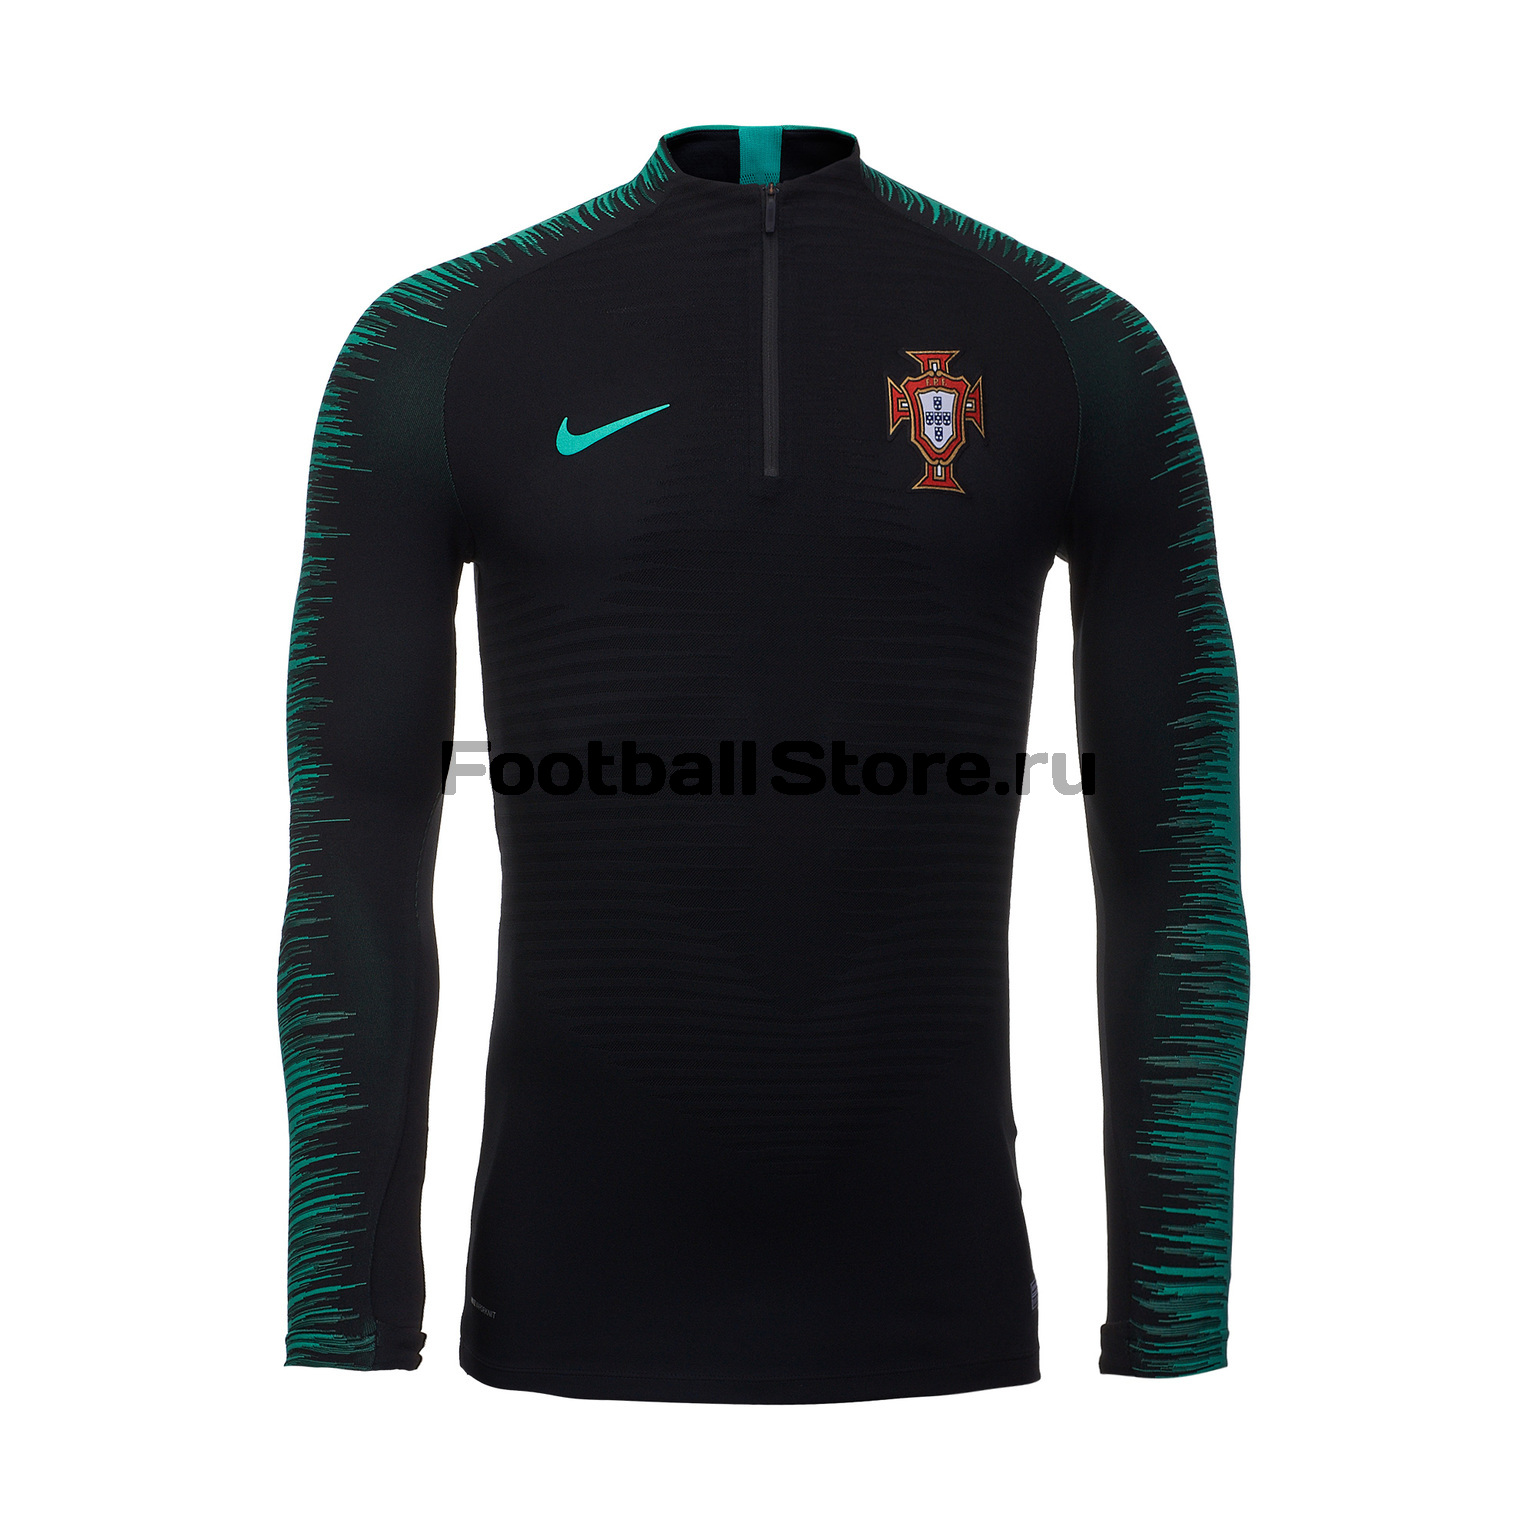 Олимпийка Nike сборной Португалии 893018-010